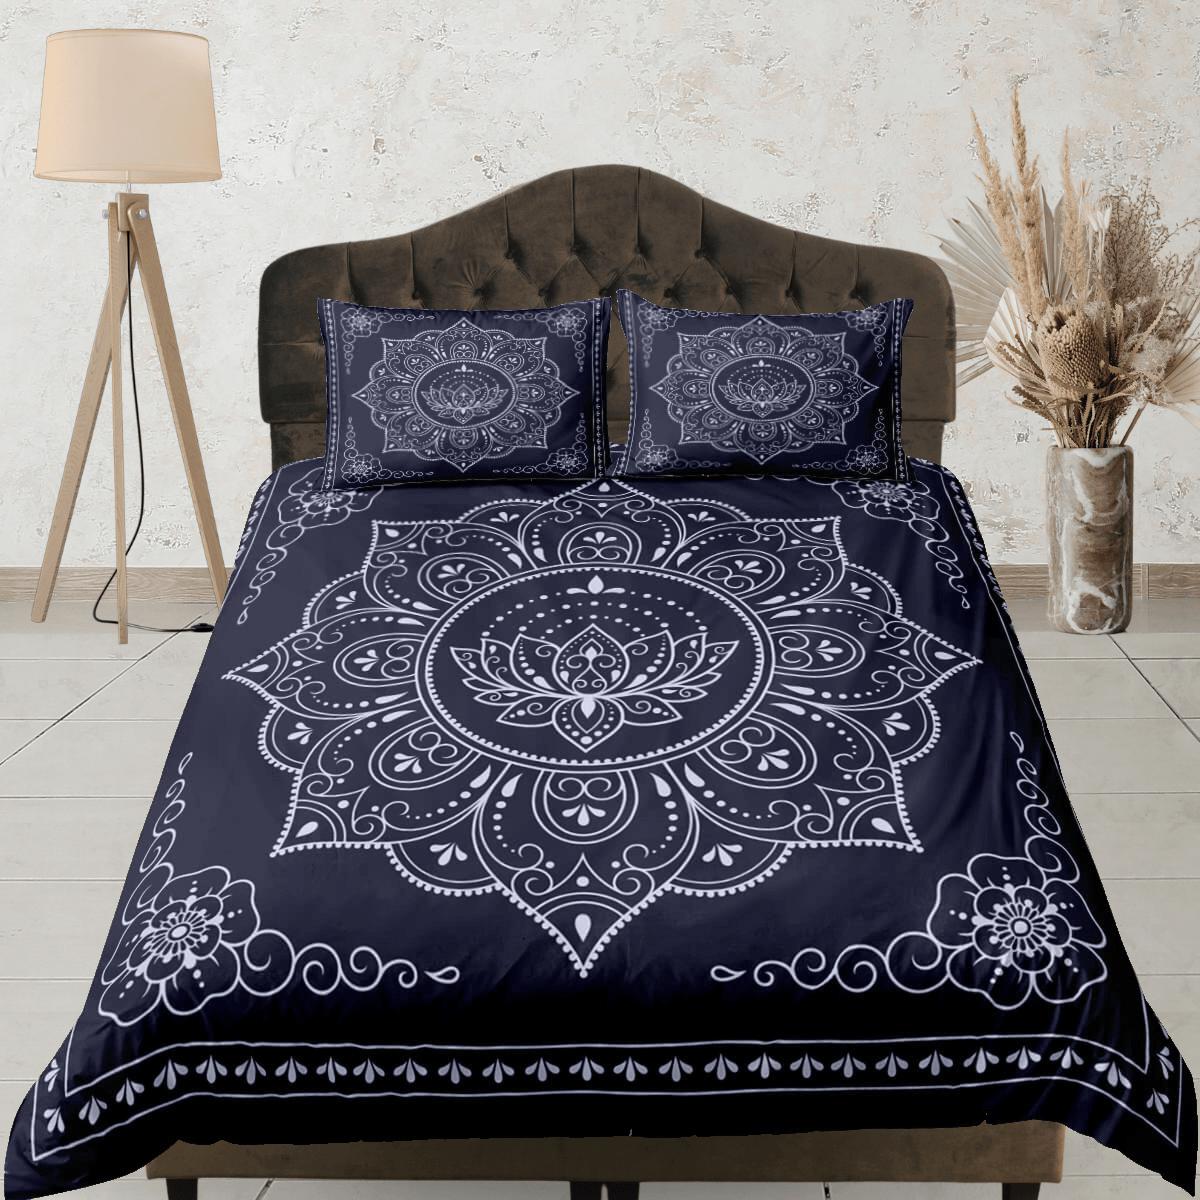 daintyduvet Mandala dark blue duvet cover boho bedding set full, queen, king, dorm bedding, aesthetic room decor indian bedspread maximalist decor